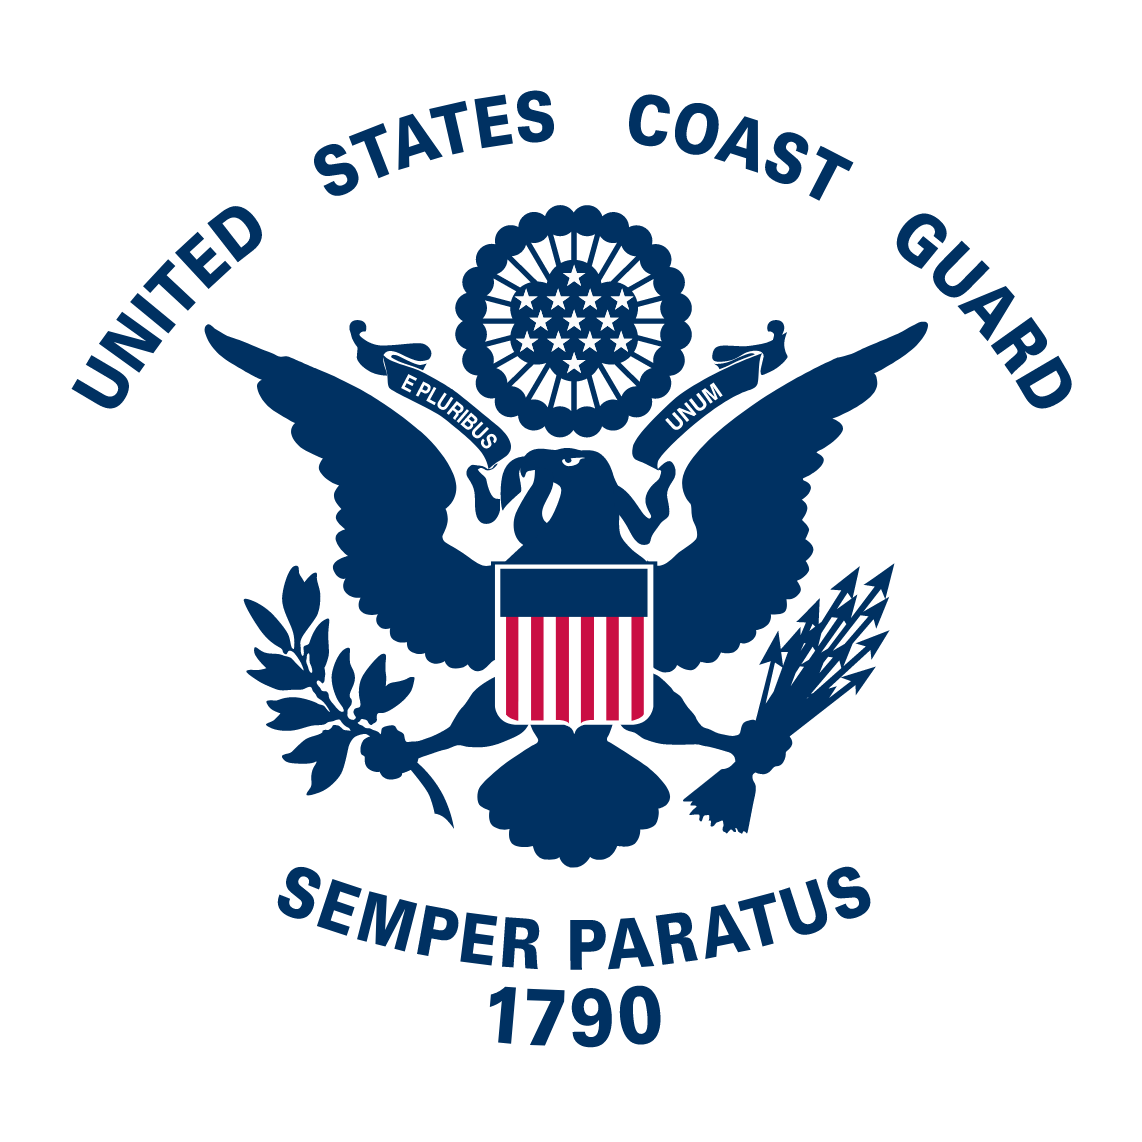 The Coast Guard Logo